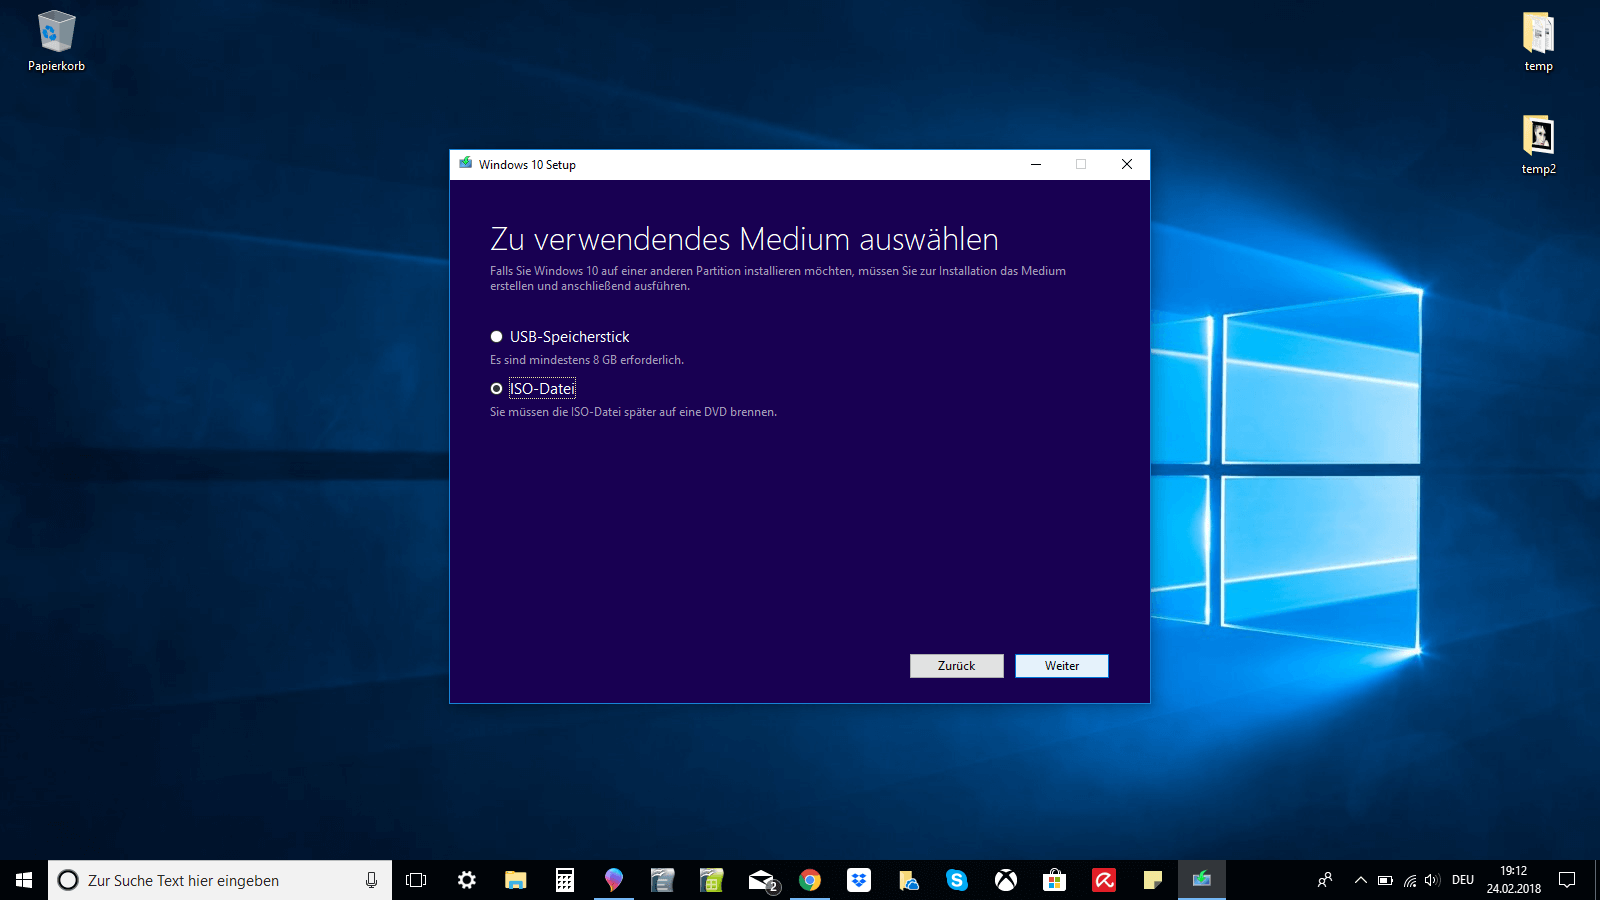 Windows-10-Setup-Fenster, um ein zu verwendendes Medium auszuwählen